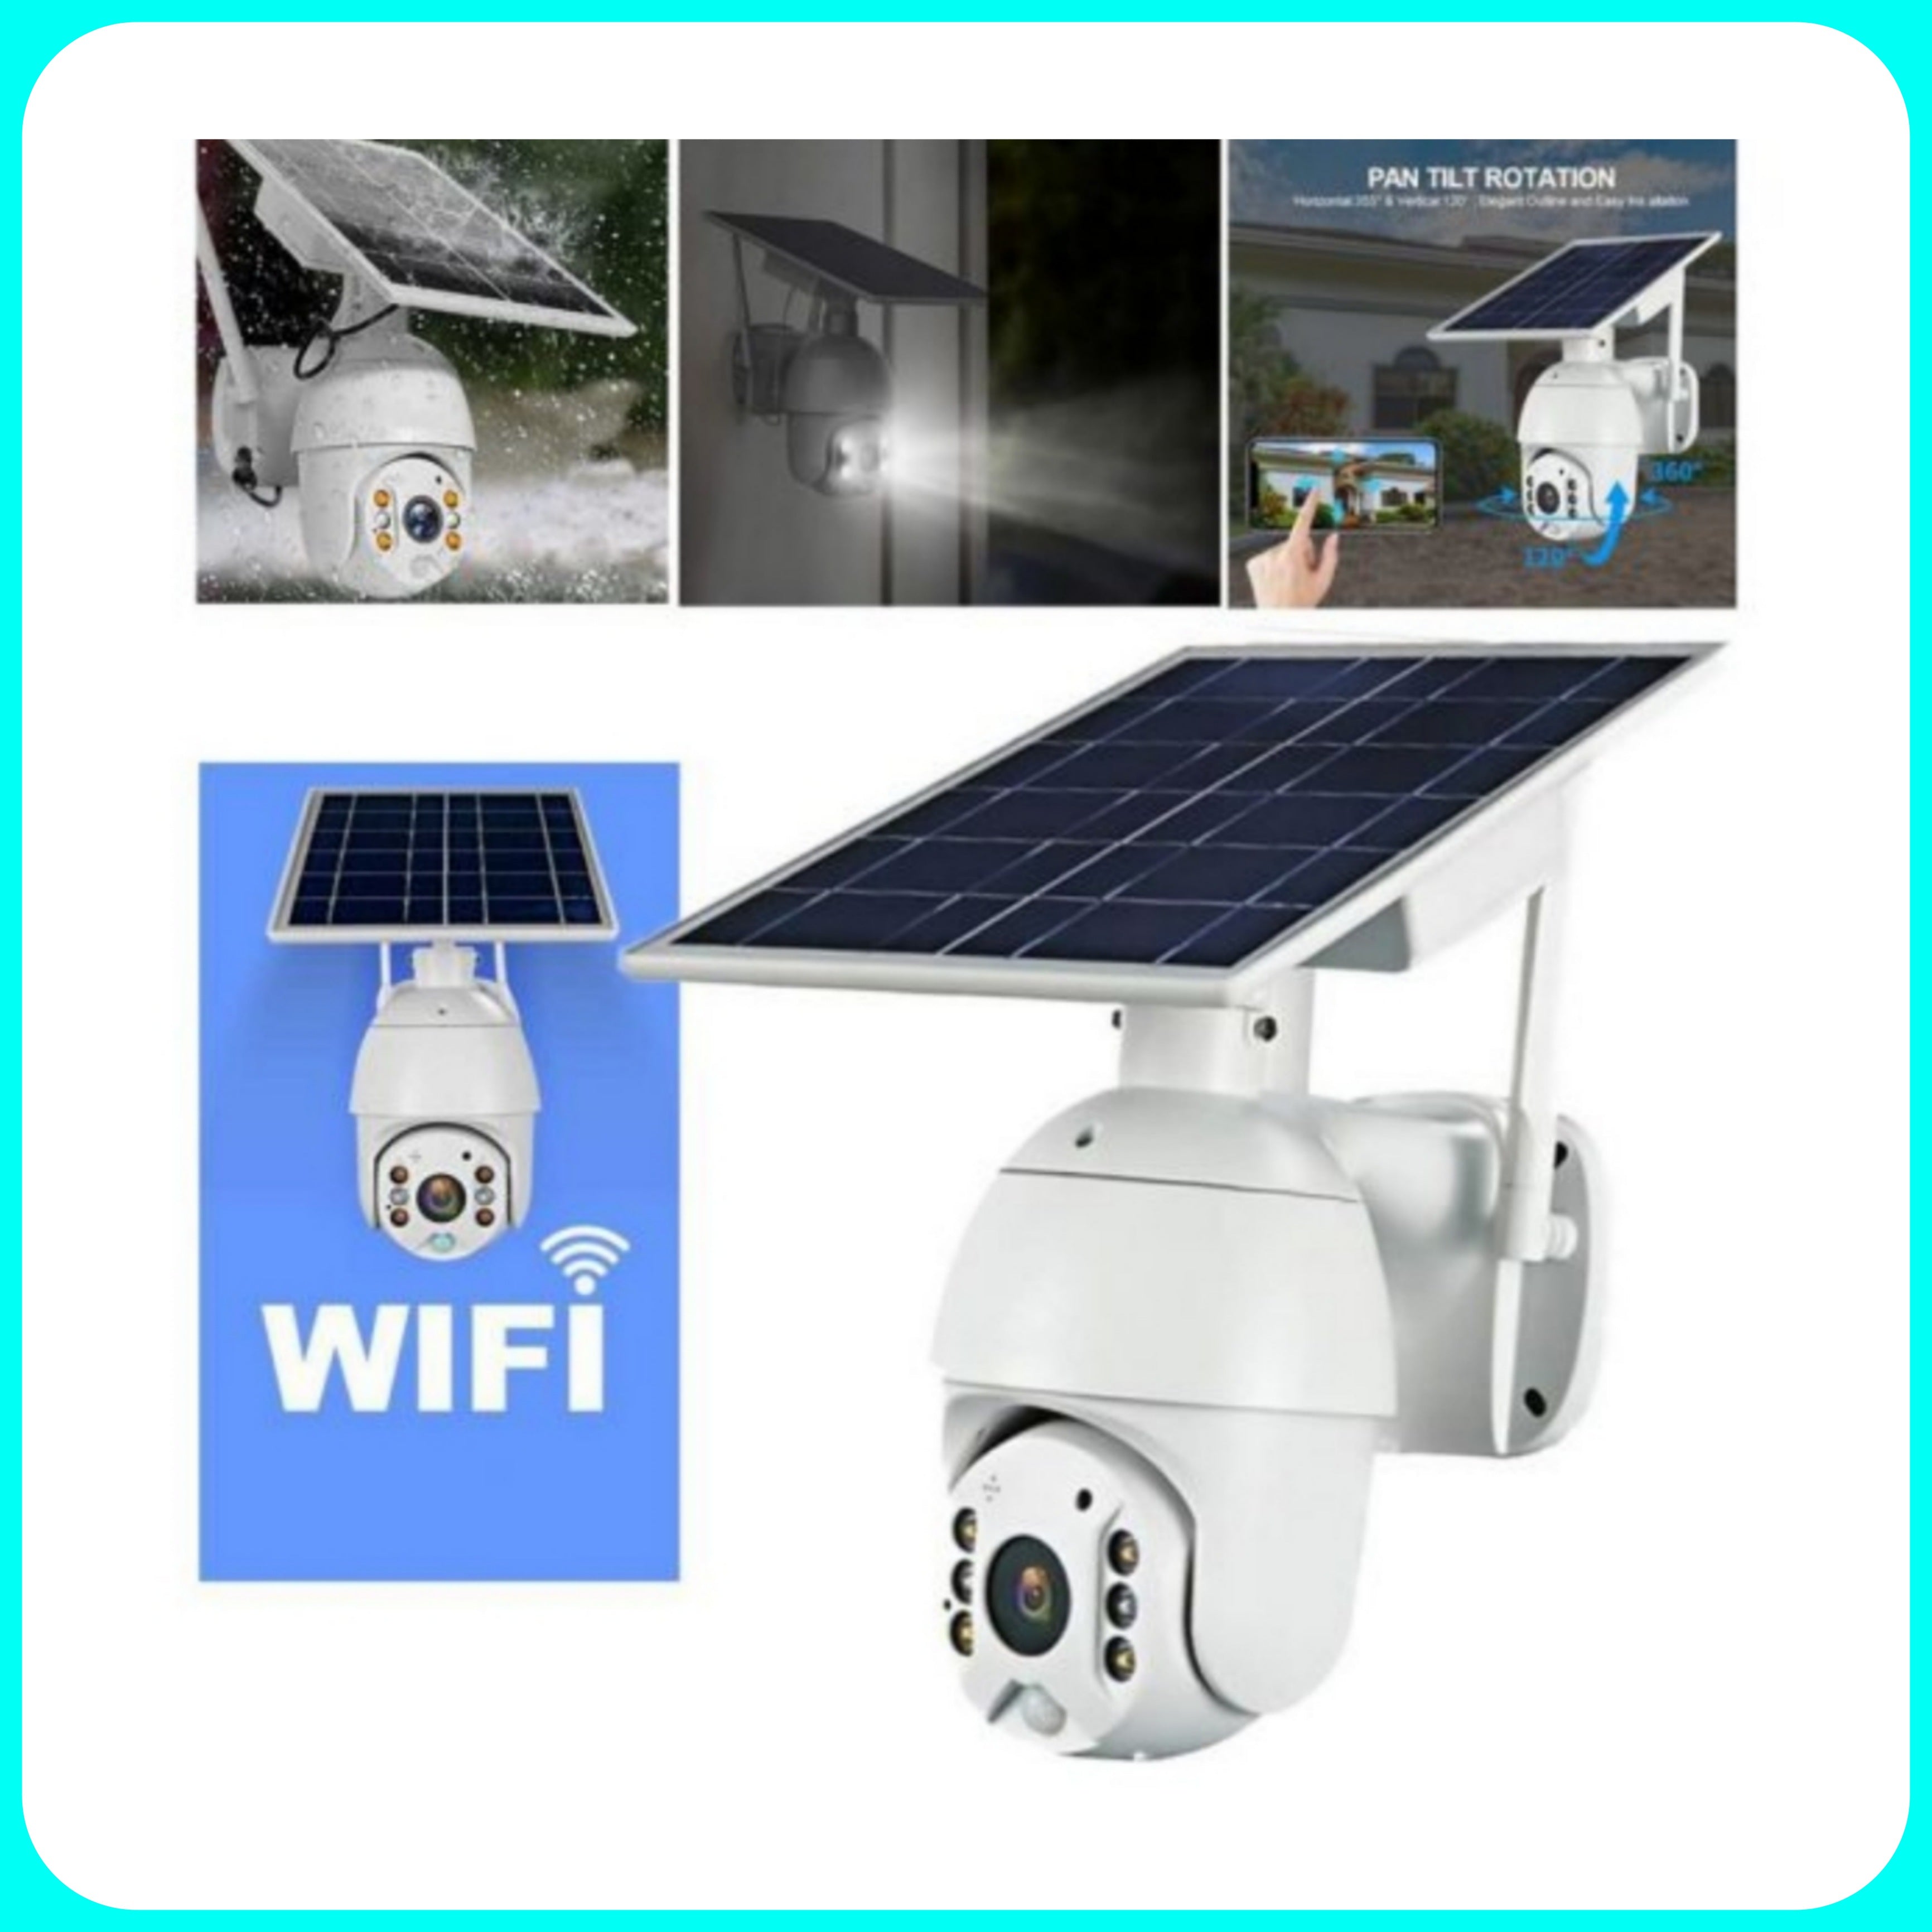 Telecamera di sicurezza - Videosorveglianza Esterno, Pannello solare, Telecamera IP, Wireless, 1080P, Panoramica, WiFi, Infrarossi, Notturna.